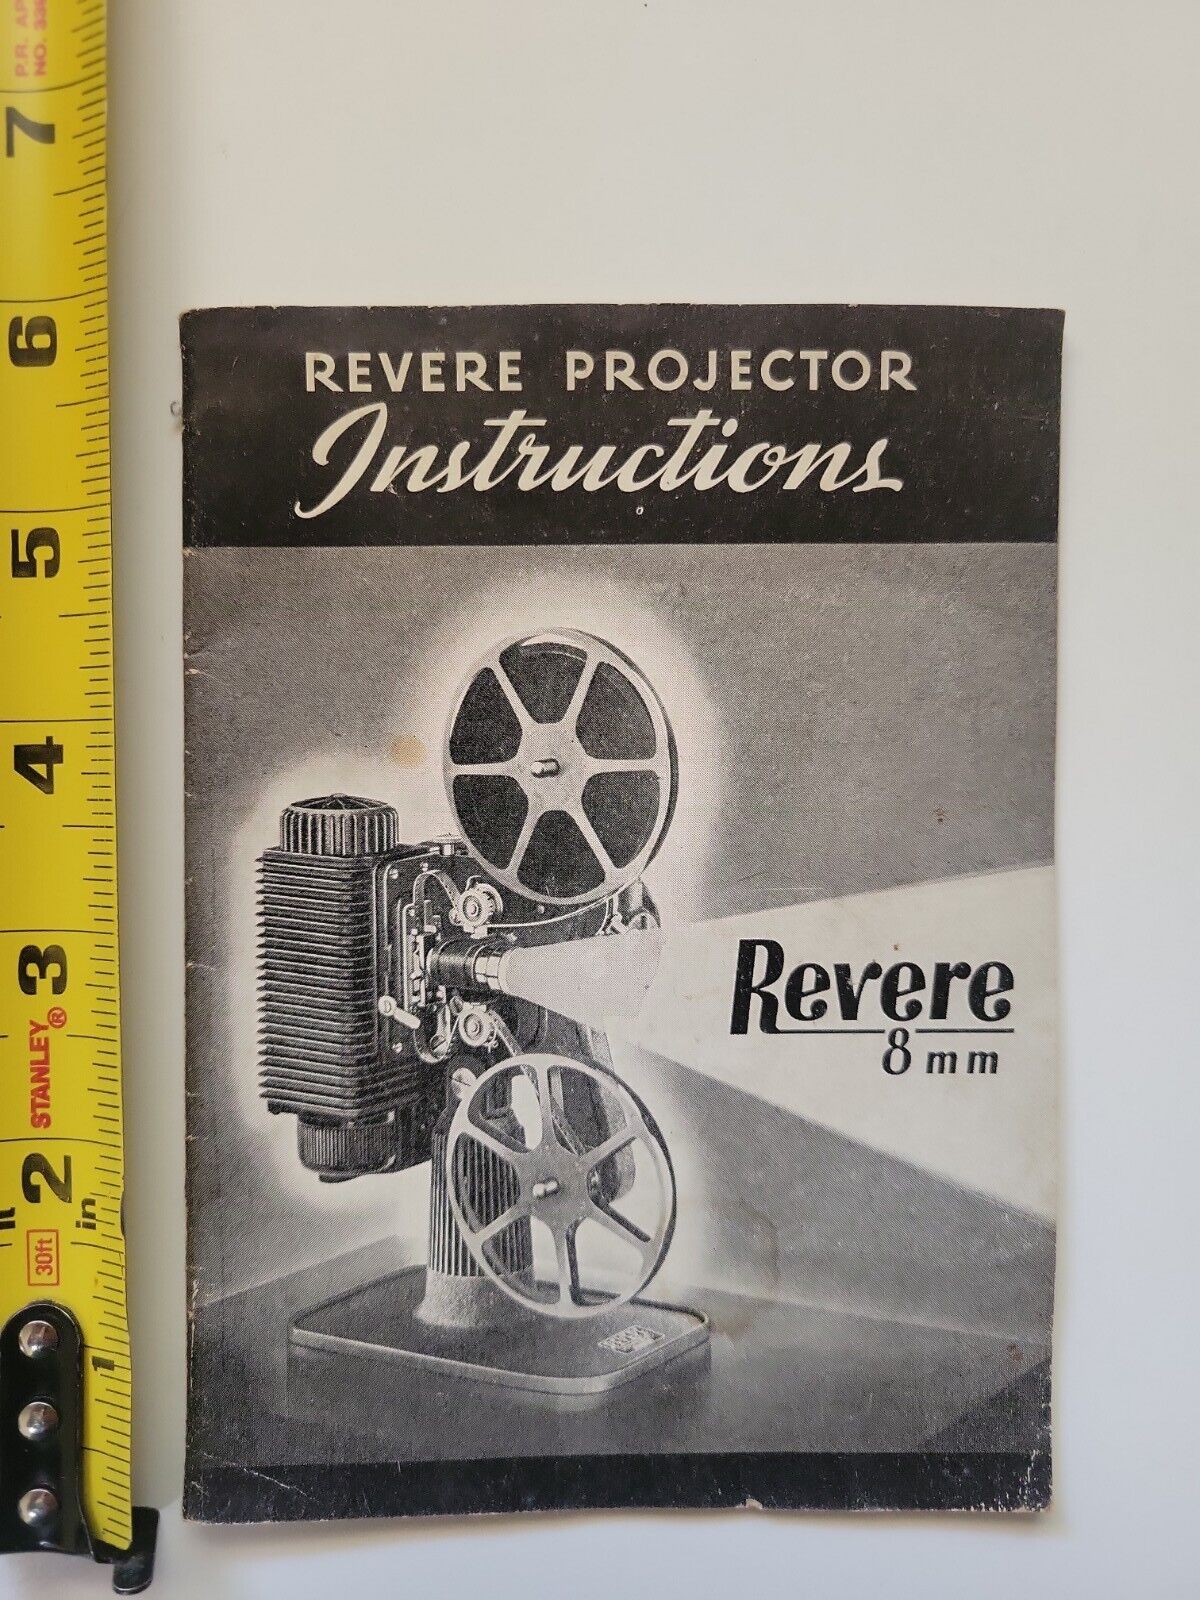 VINTAGE REVERE MODEL 85 8mm Film Projector Manual 